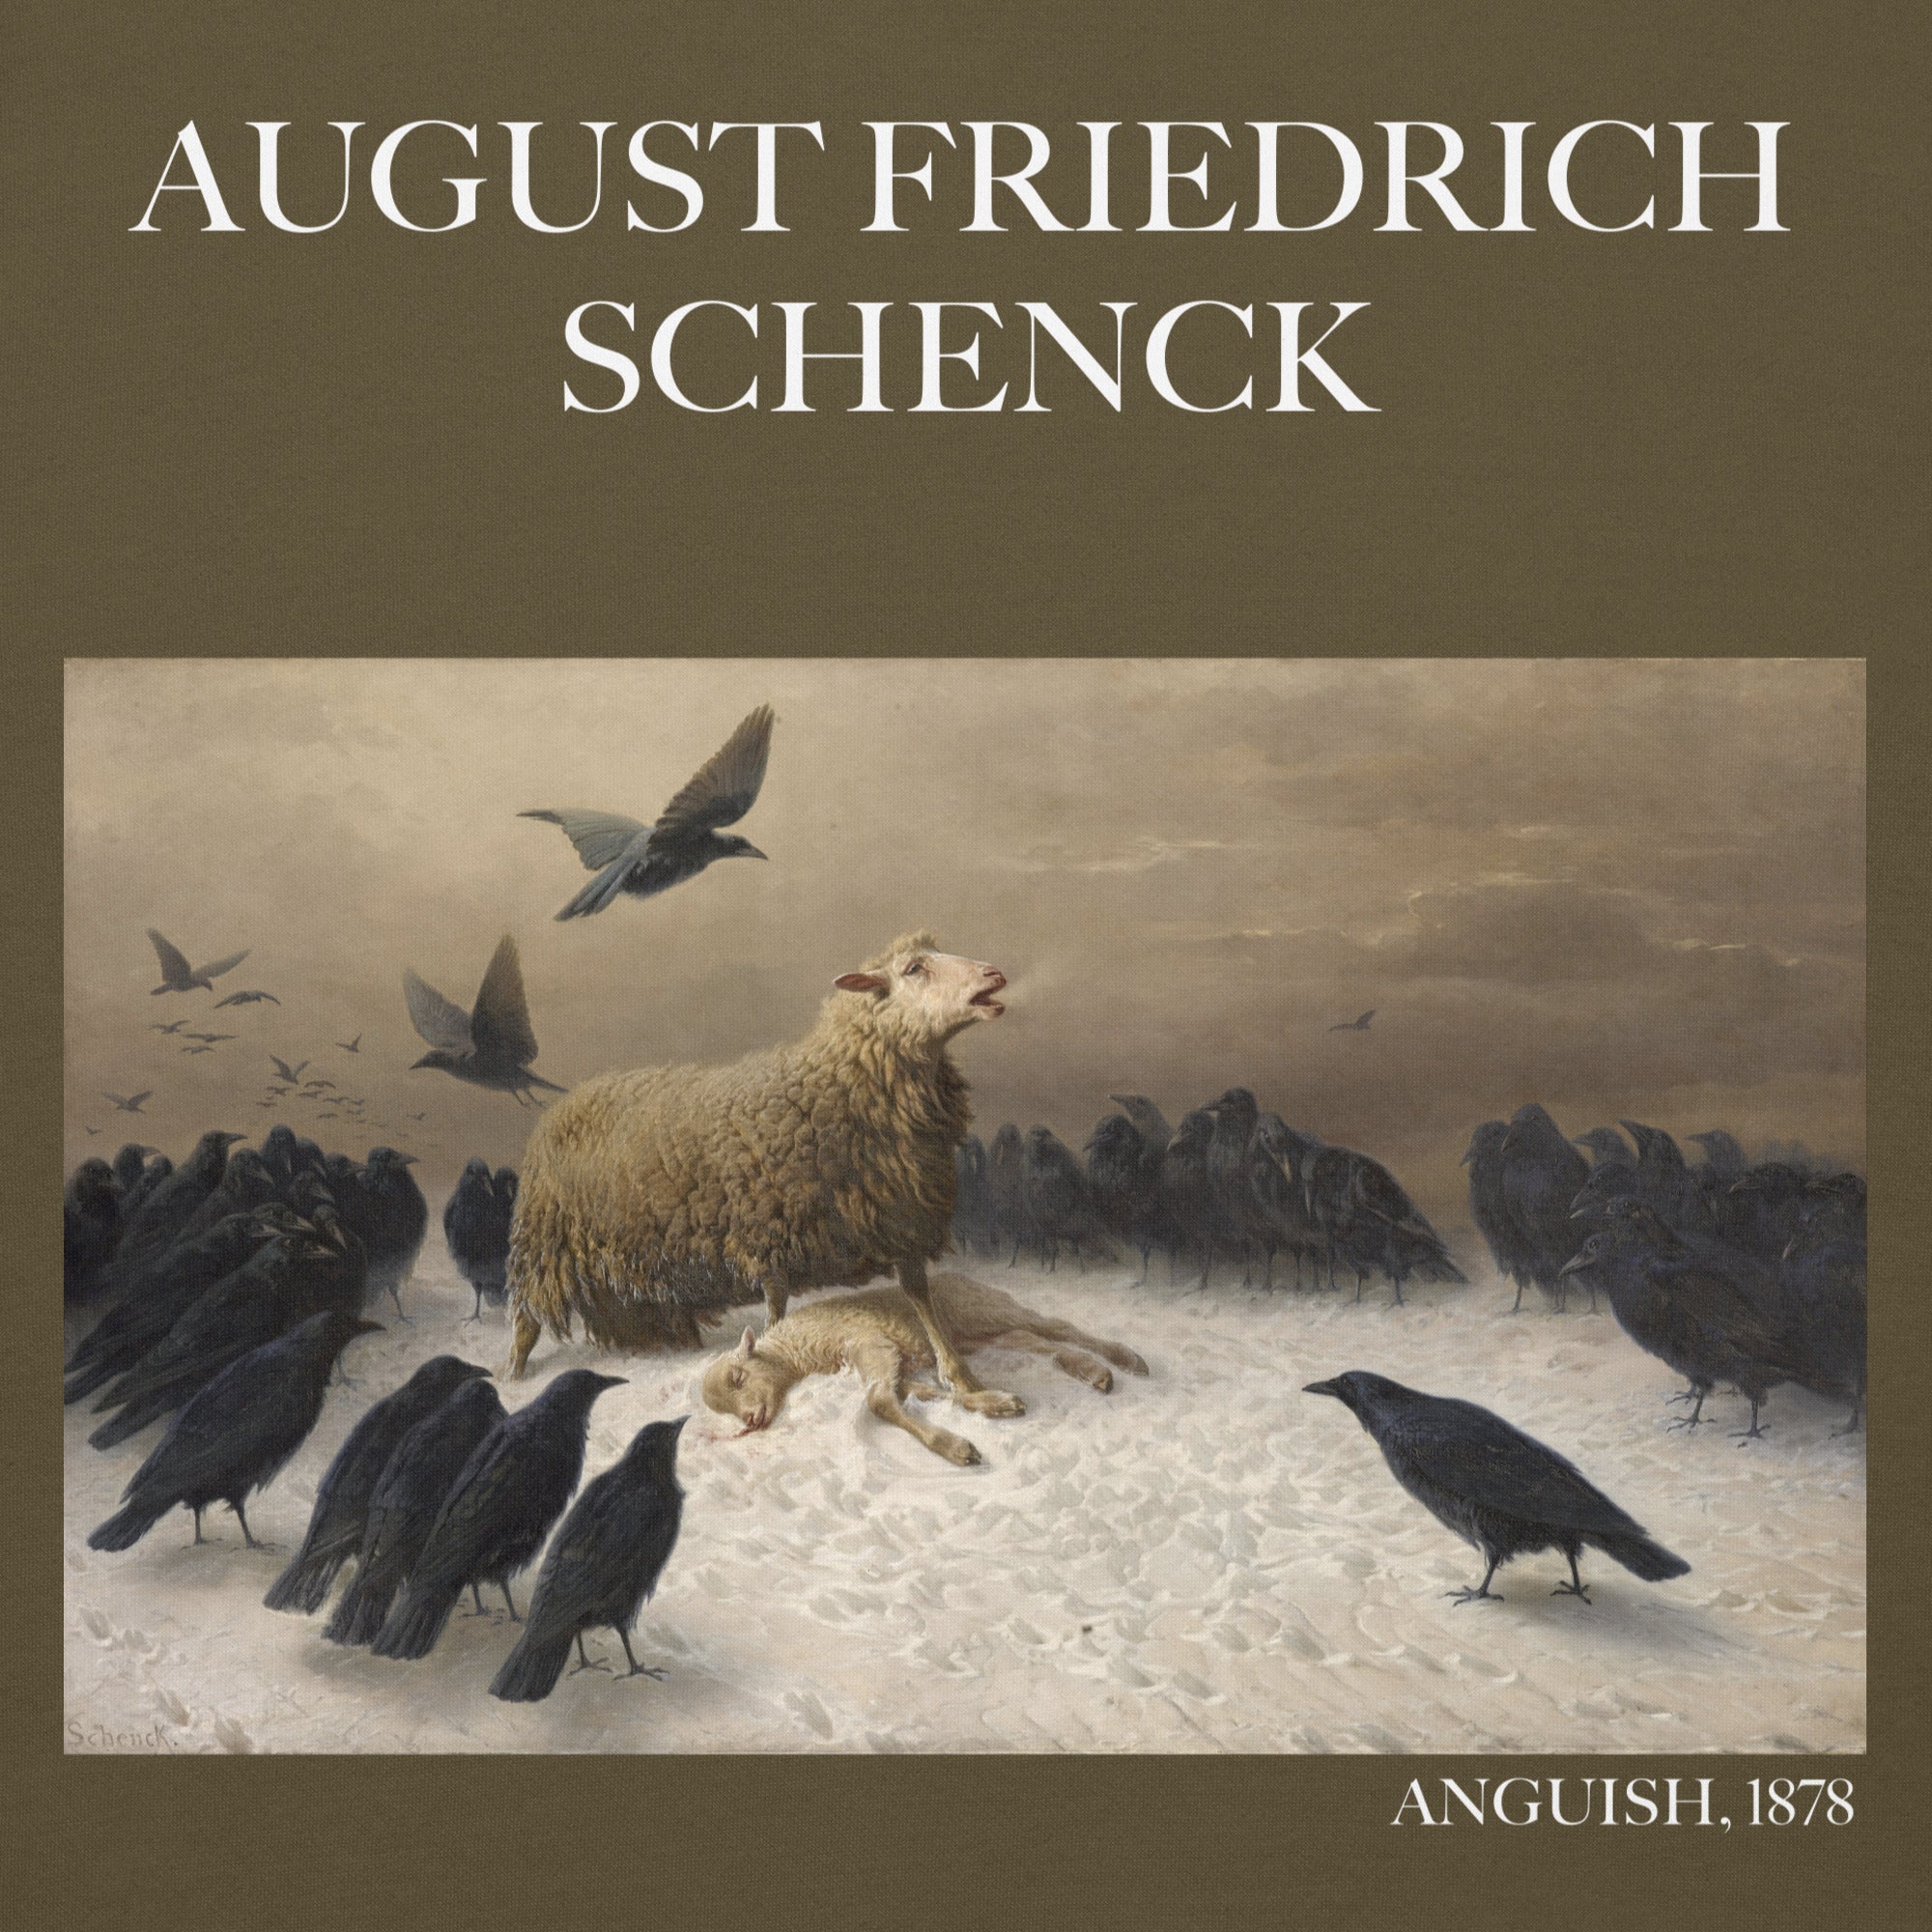 August Friedrich Schenck 'Angst' Berühmtes Gemälde Hoodie | Unisex Premium Kunst Hoodie